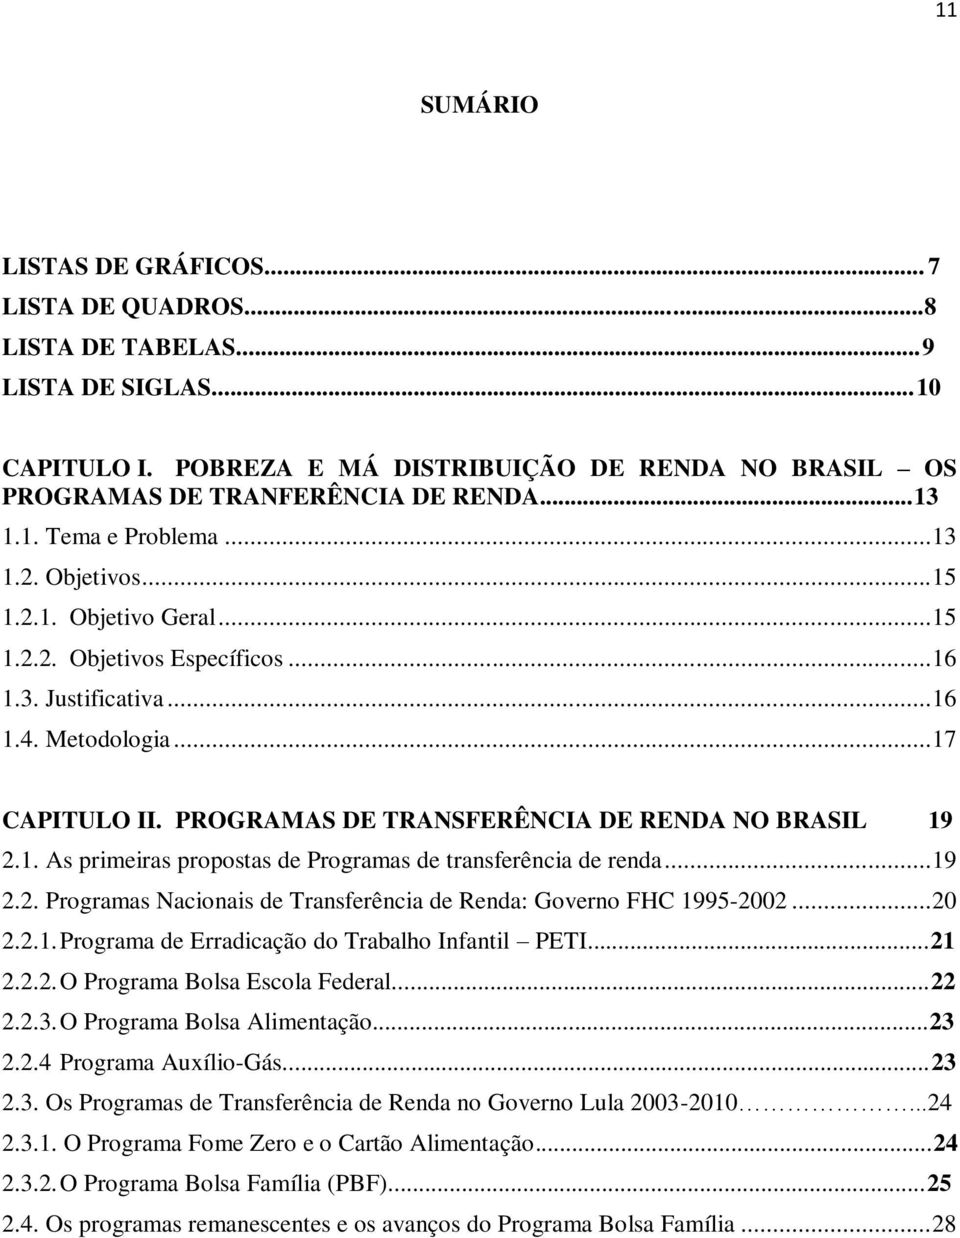 PROGRAMAS DE TRANSFERÊNCIA DE RENDA NO BRASIL 19 2.1. As primeiras propostas de Programas de transferência de renda... 19 2.2. Programas Nacionais de Transferência de Renda: Governo FHC 1995-2002.